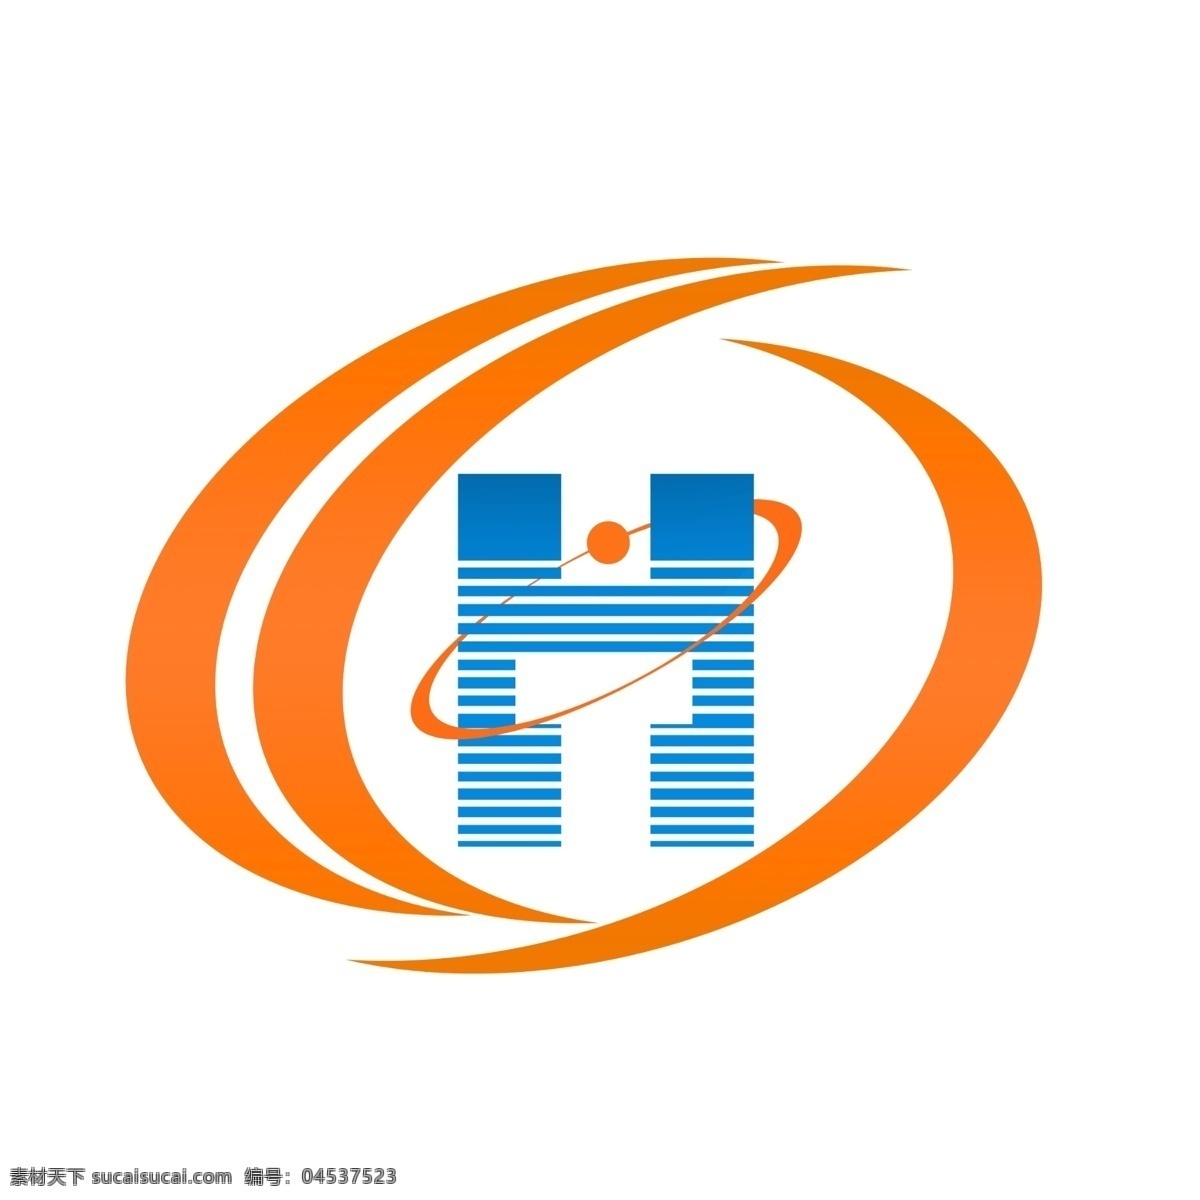 企业 标志 logo ht标志 htlogo 企业标志 th标志 企业标识